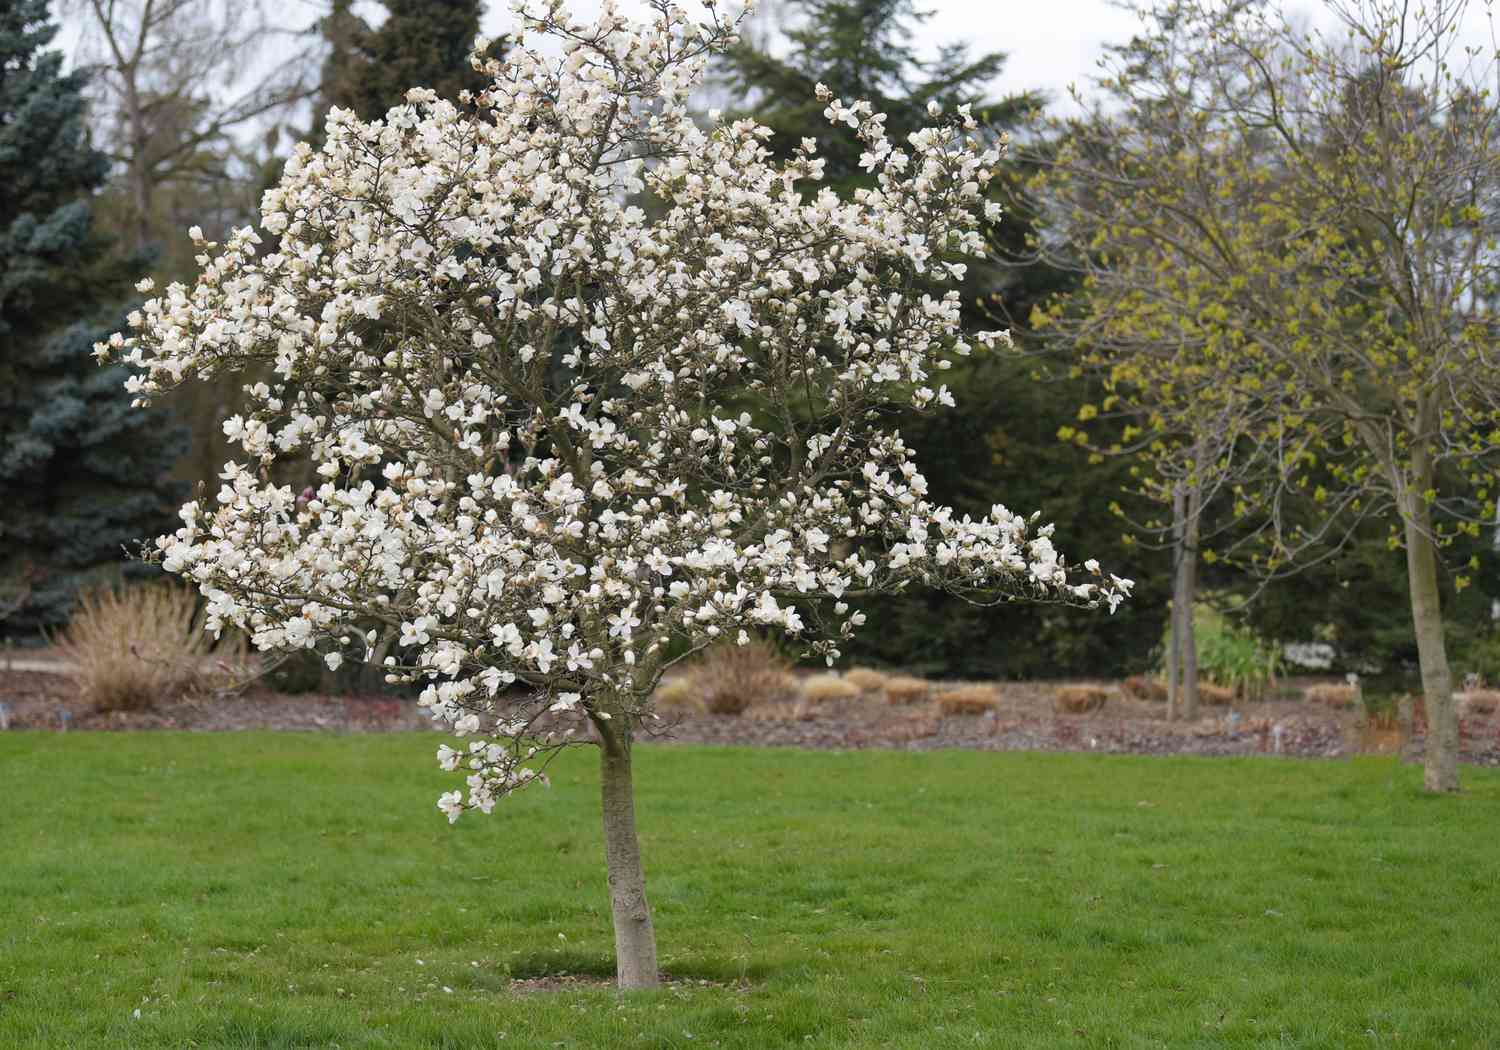 Kobus-Magnolienbaum in der Mitte des Feldes mit blühenden weißen Blüten an den Zweigen